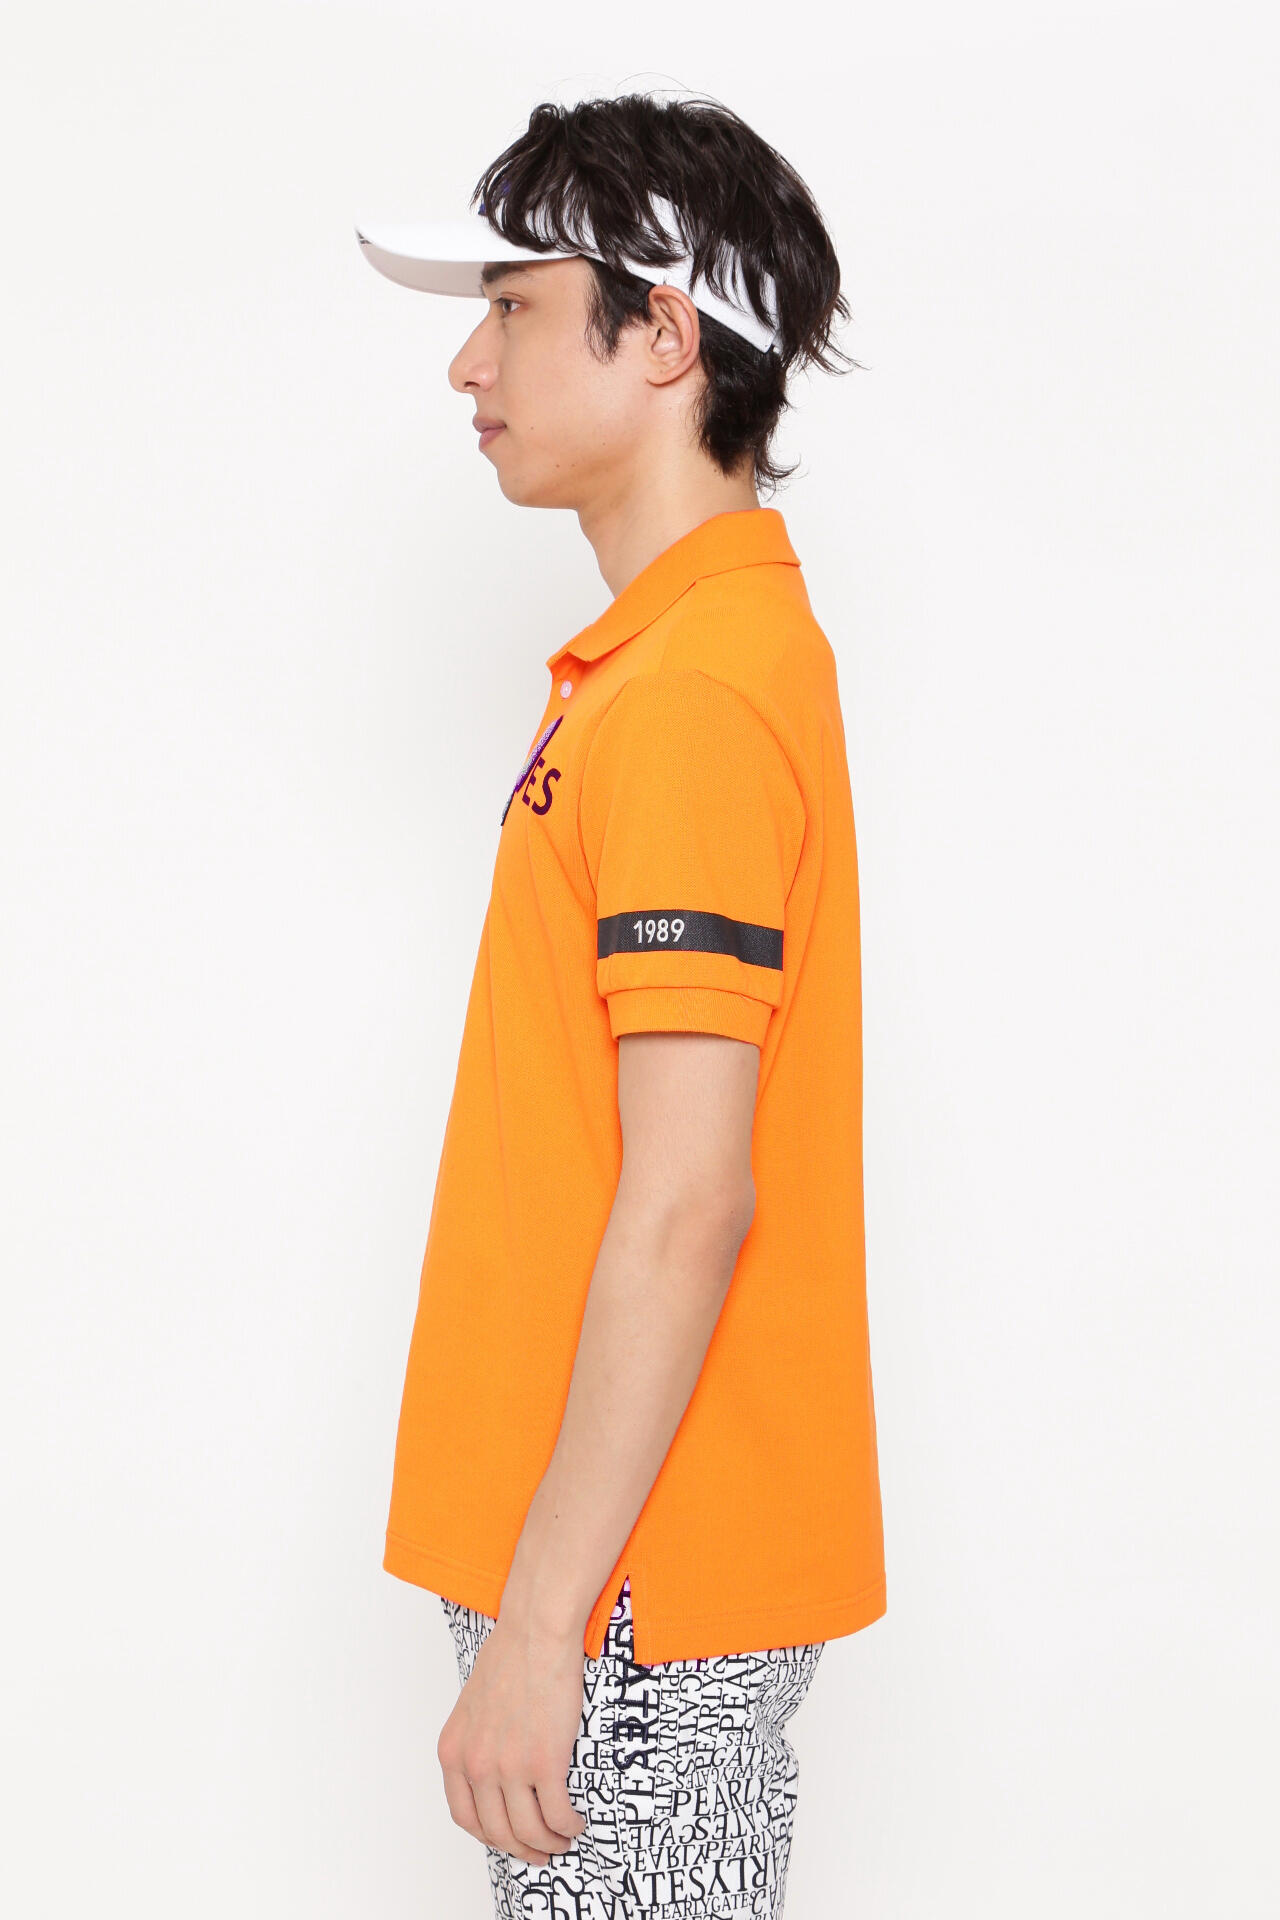 600mm身幅パーリーゲイツ ゴルフ ポロシャツ 日本製 オレンジ サイズ1 レディース